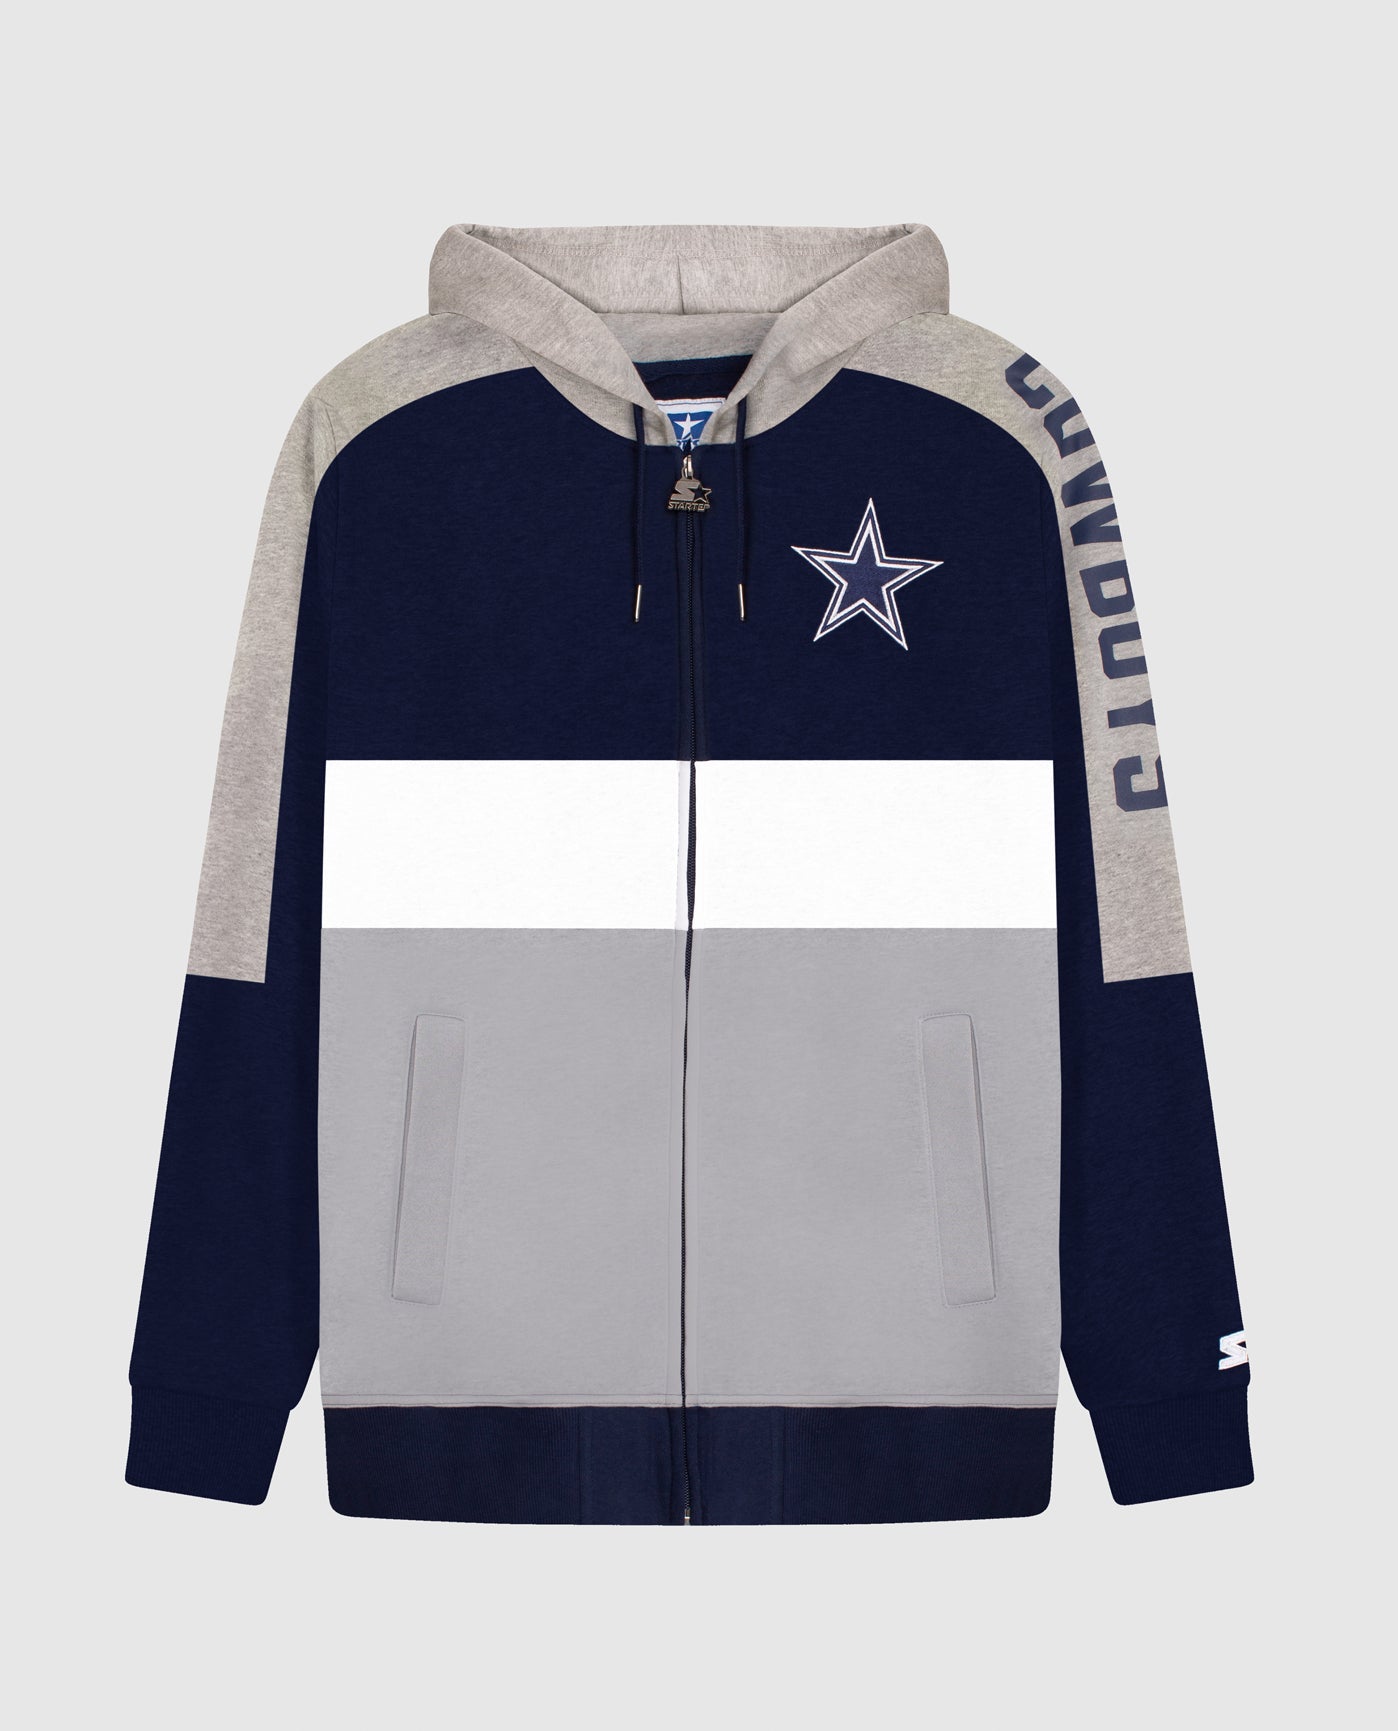 18% SALE OFF Dallas Cowboys Zip Up Hoodies 3D Sweatshirt Long Sleeve – 4  Fan Shop